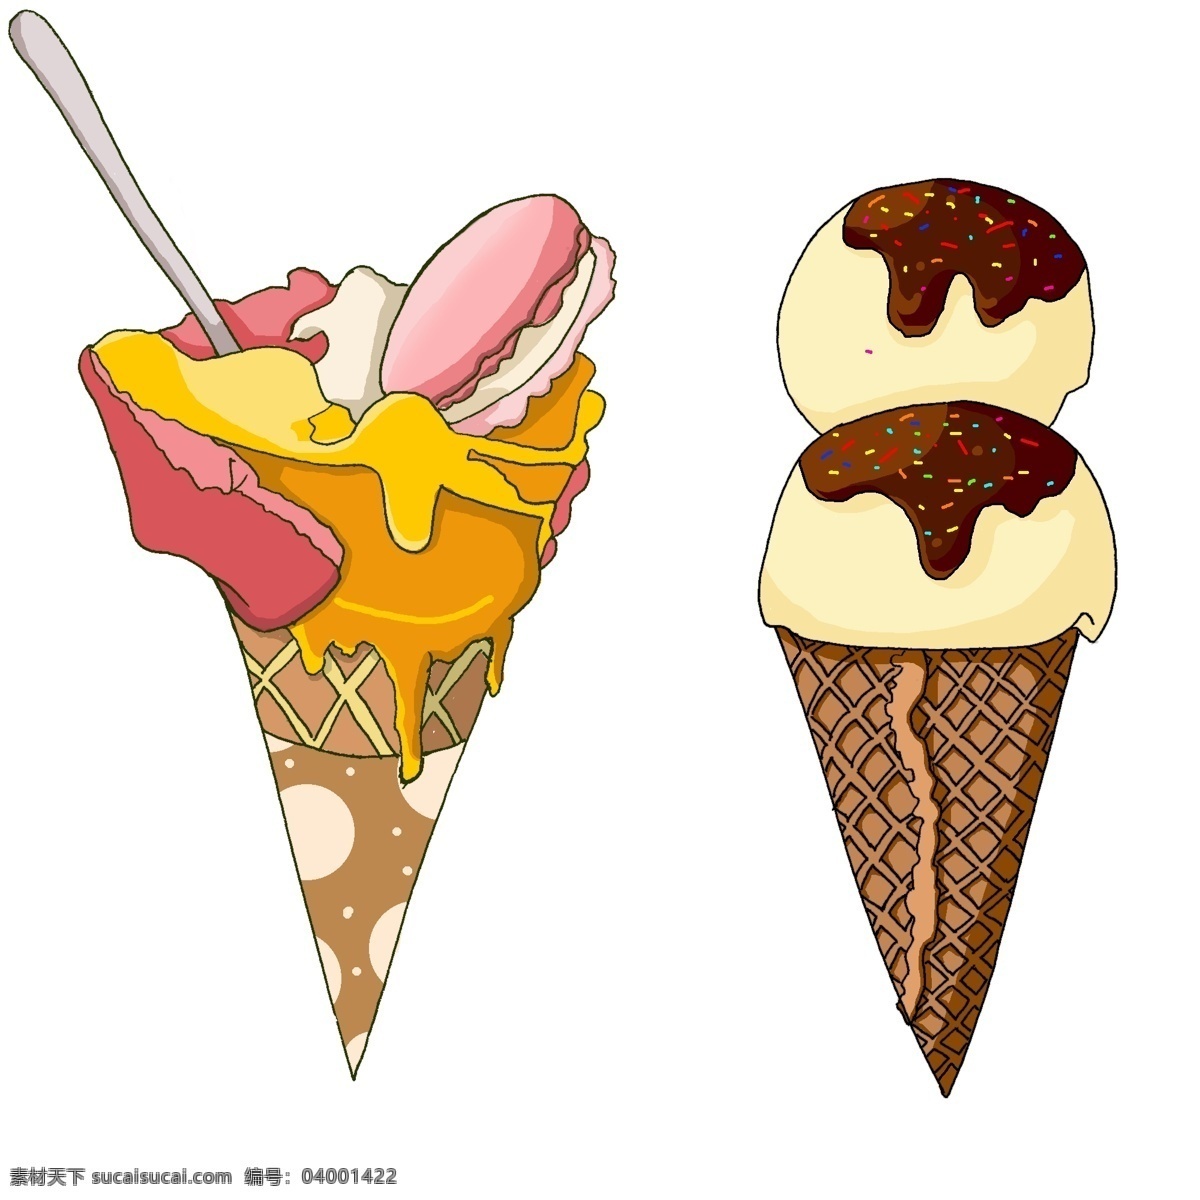 巧克力冰淇凌 冰淇淋 冰棍 冰淇凌 球 巧克力 冰淇凌球 冰欺凌杯 好吃的雪糕 甜头 水果冰糕